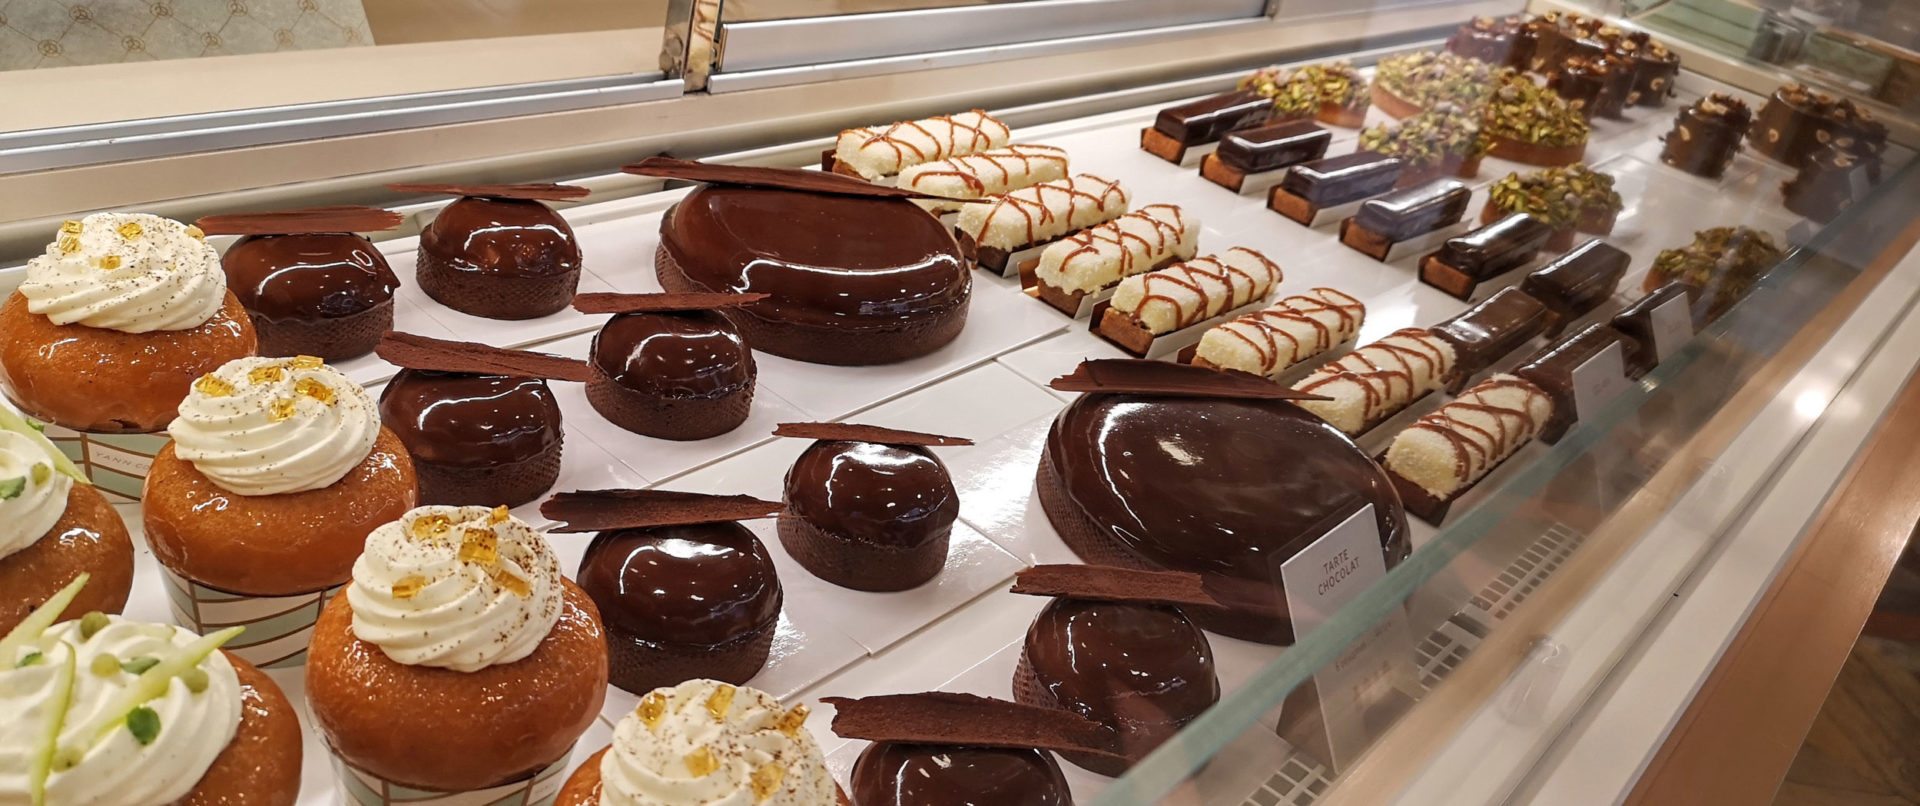 pastry-tour-paris-le-marais-kids-teens-chocolate